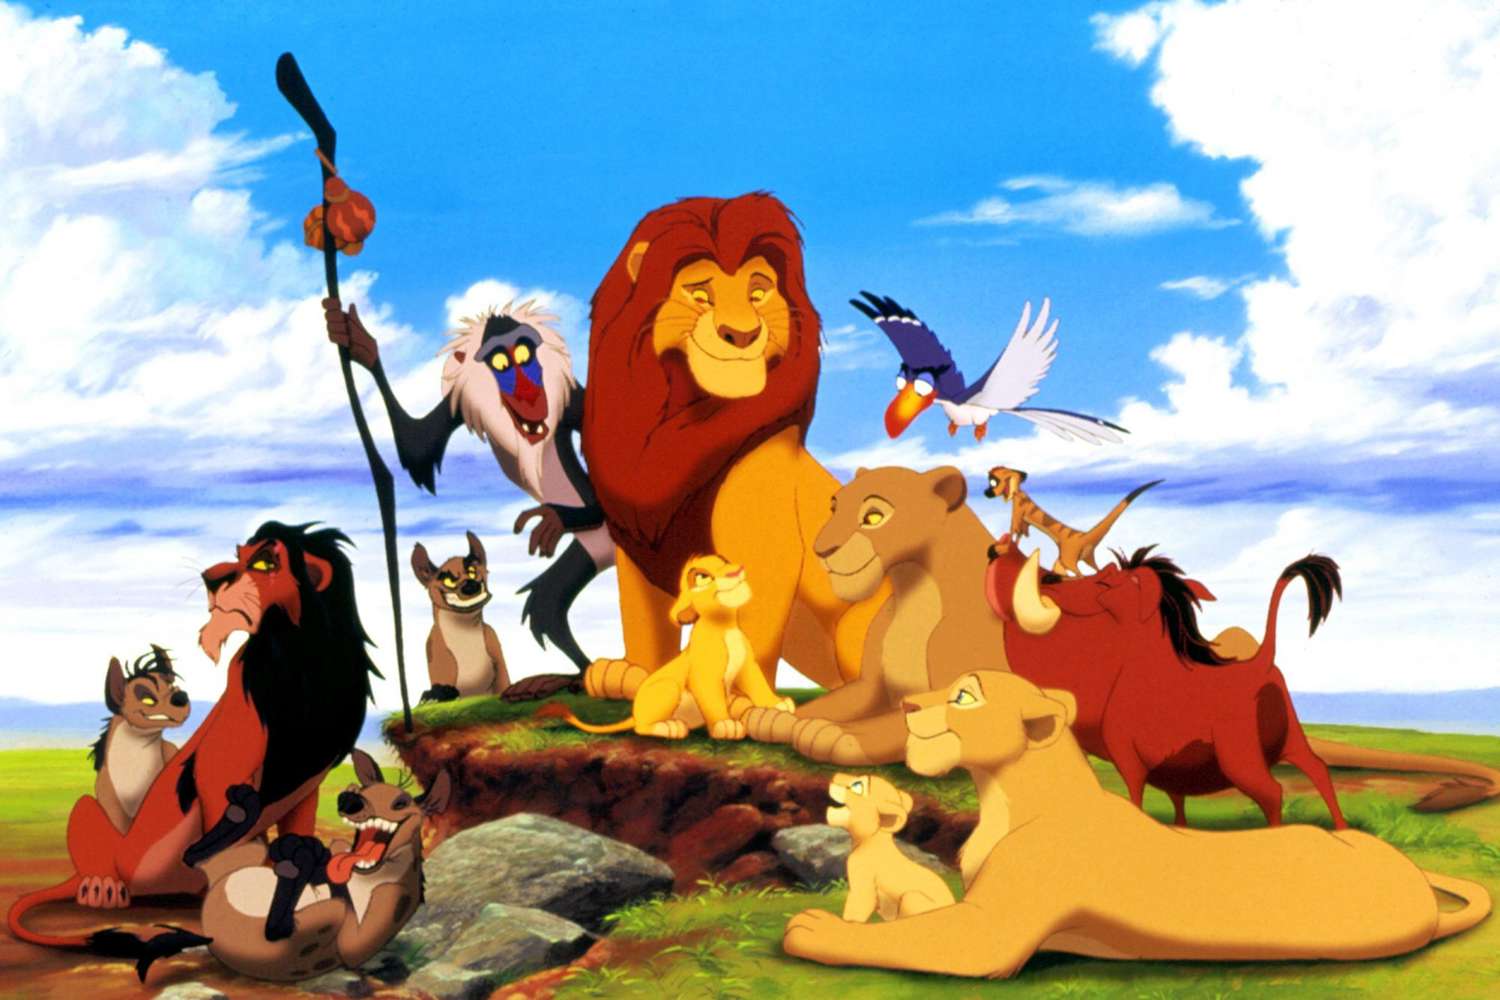 Male Disney Characters: A List of Fan Favorite Disney Men   Simba - The Lion King